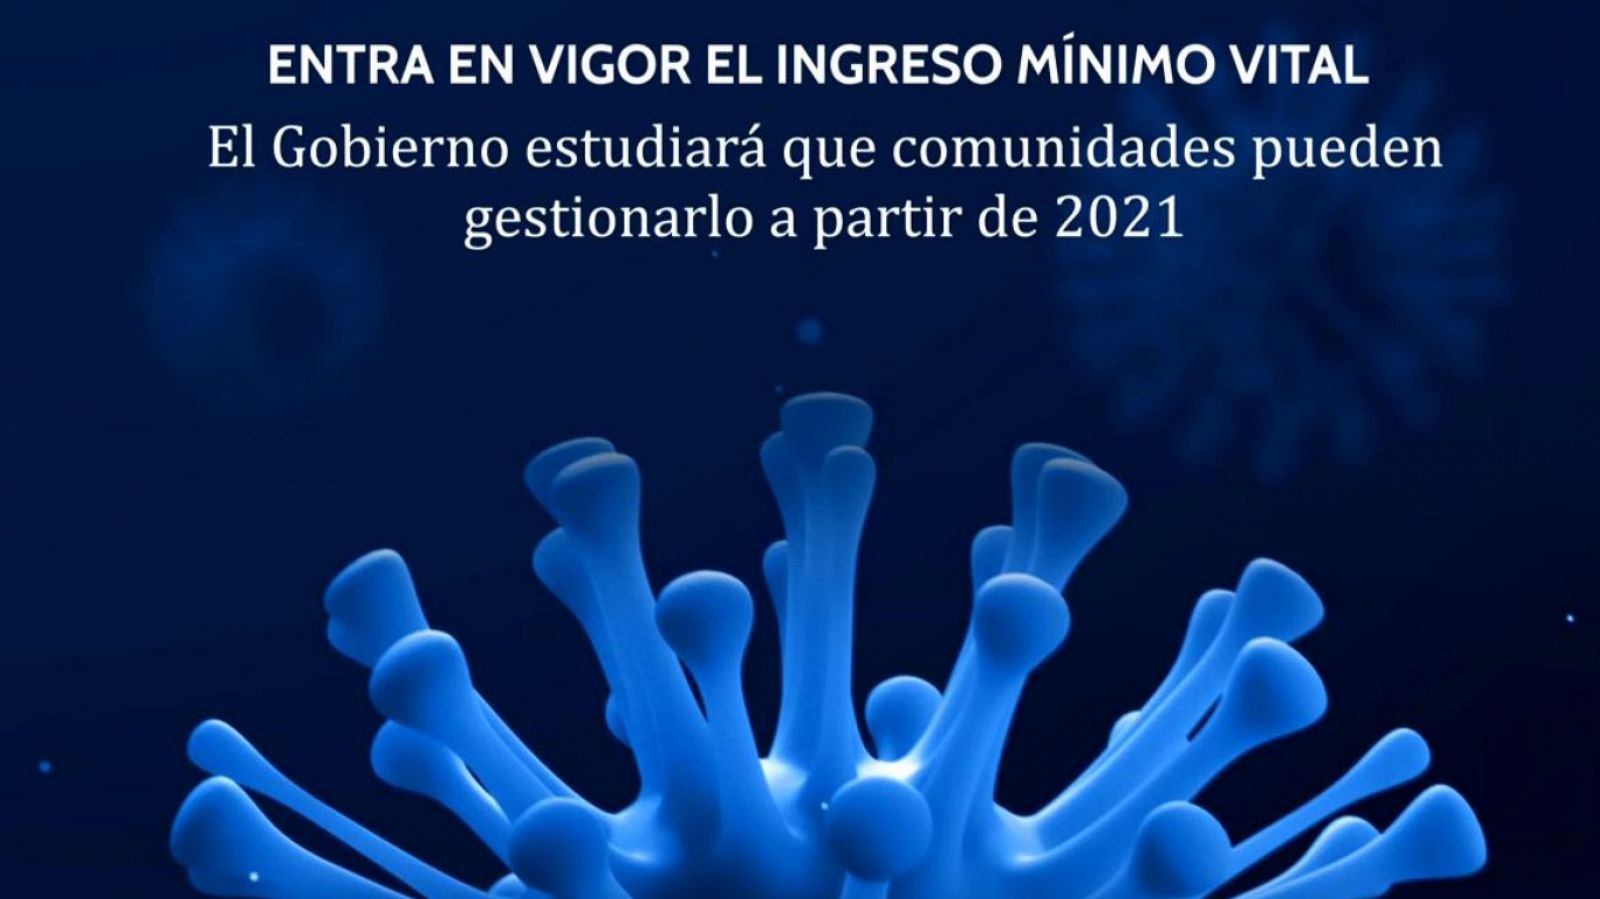 Especial Informativo - Coronavirus - 13 h. - 01/06/20 - RTVE.es